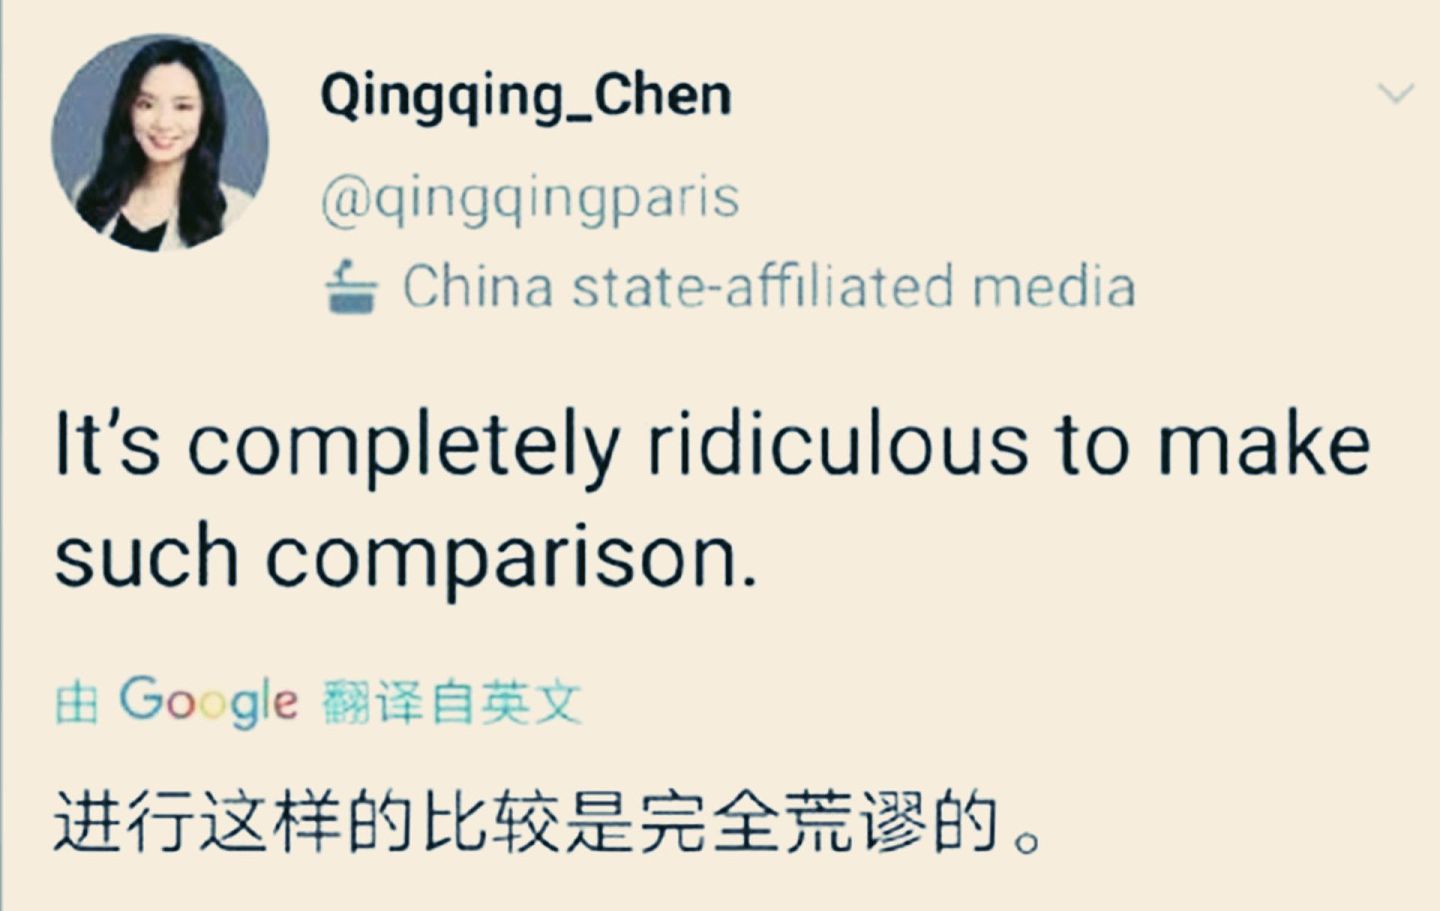 《环球时报》女记者在推特发文指责中国长安网点火对比图“荒谬”。（Twitter@qingqingparis）